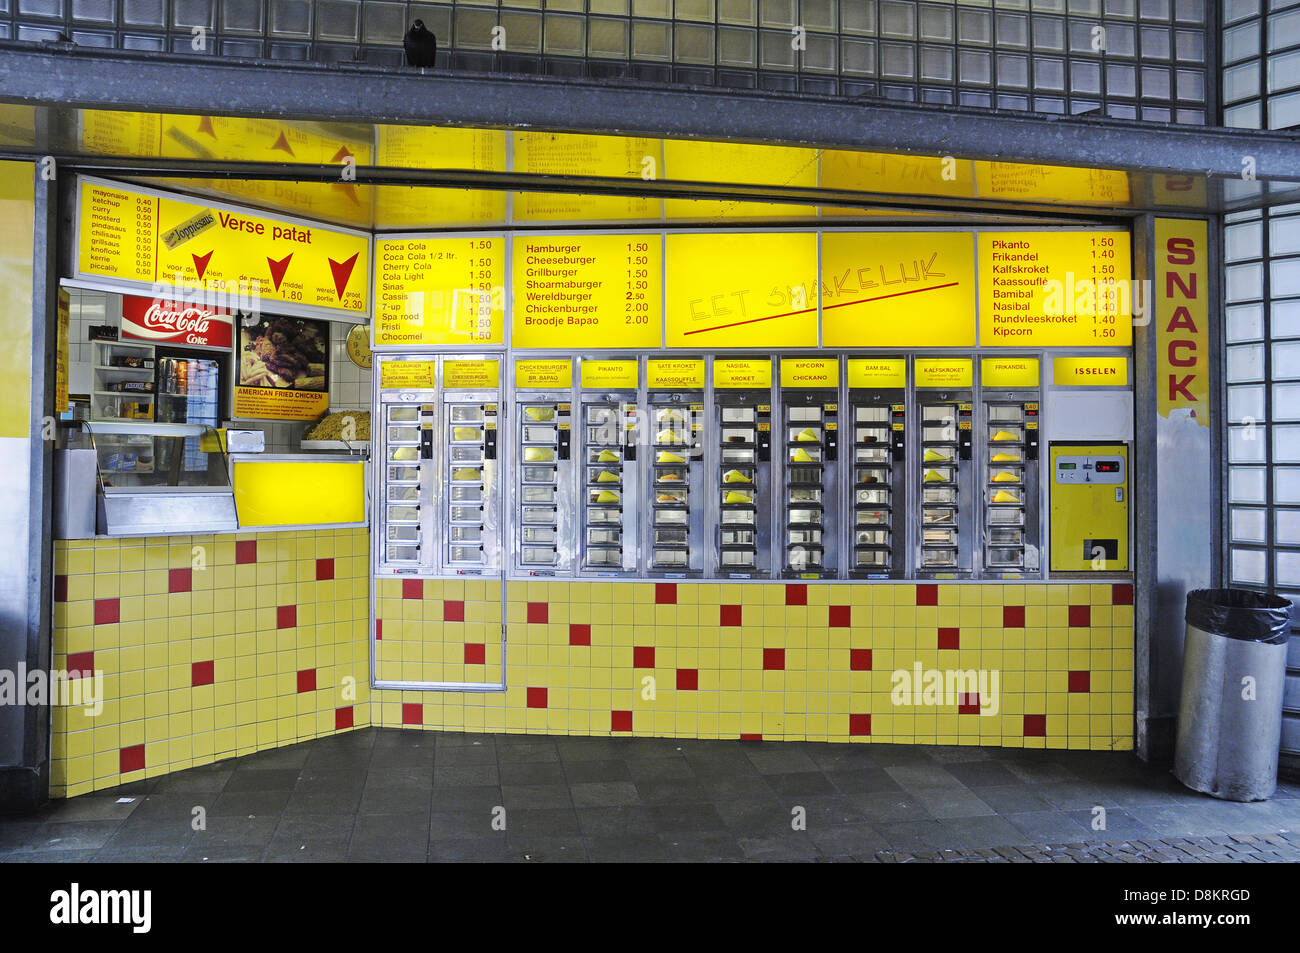 Febo Automat Wand des Essens Kostenloses Stock Bild - Public Domain Pictures